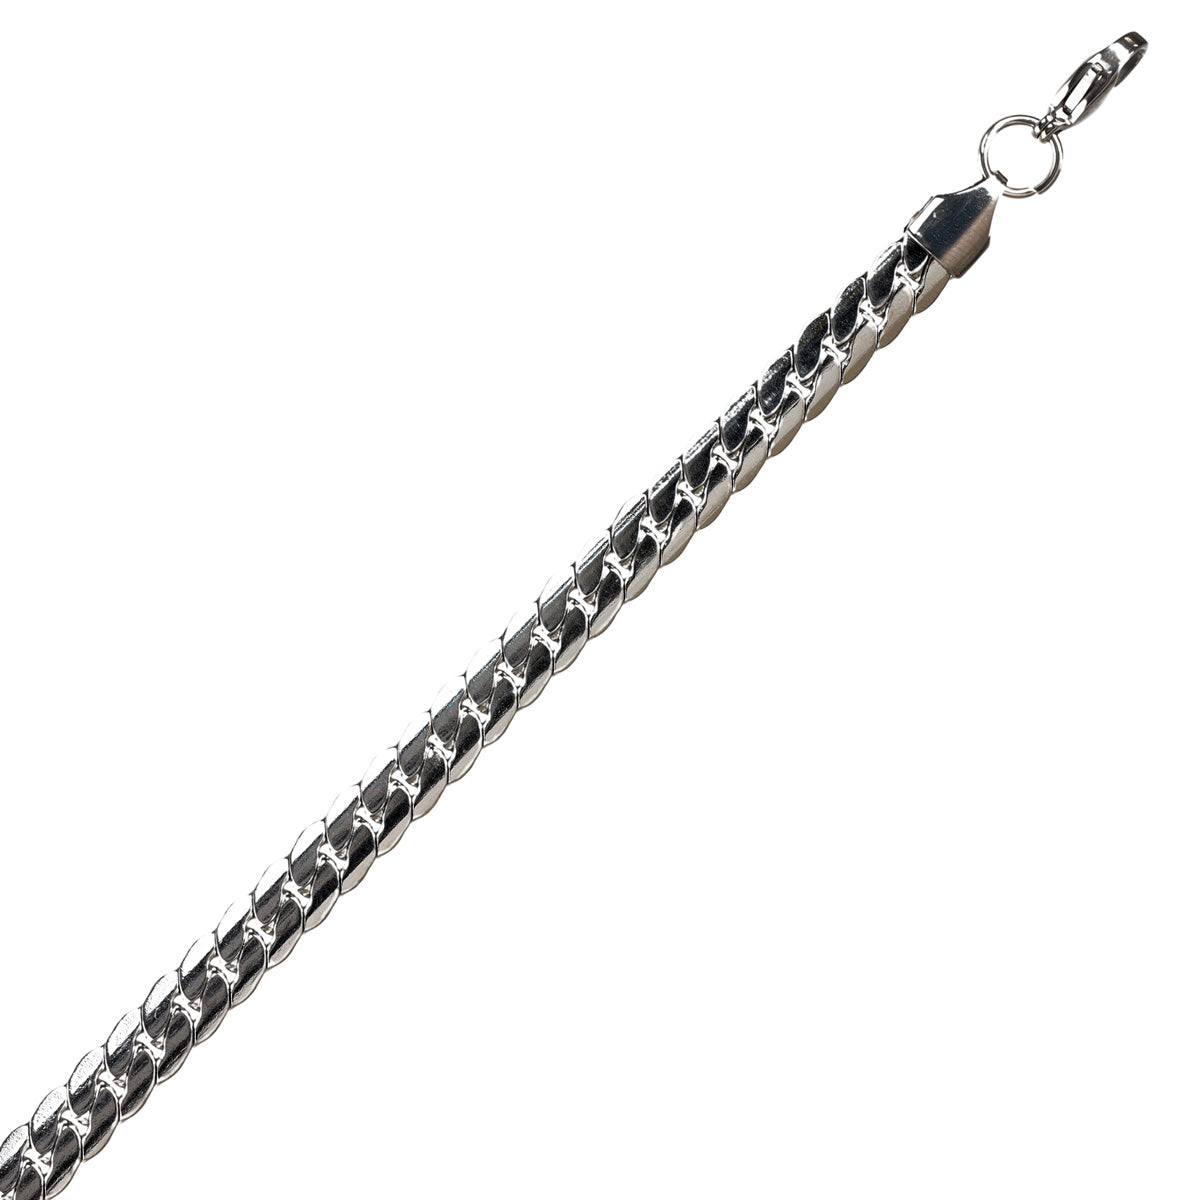 Flat armour chain bracelet 0,6cm wide (steel)